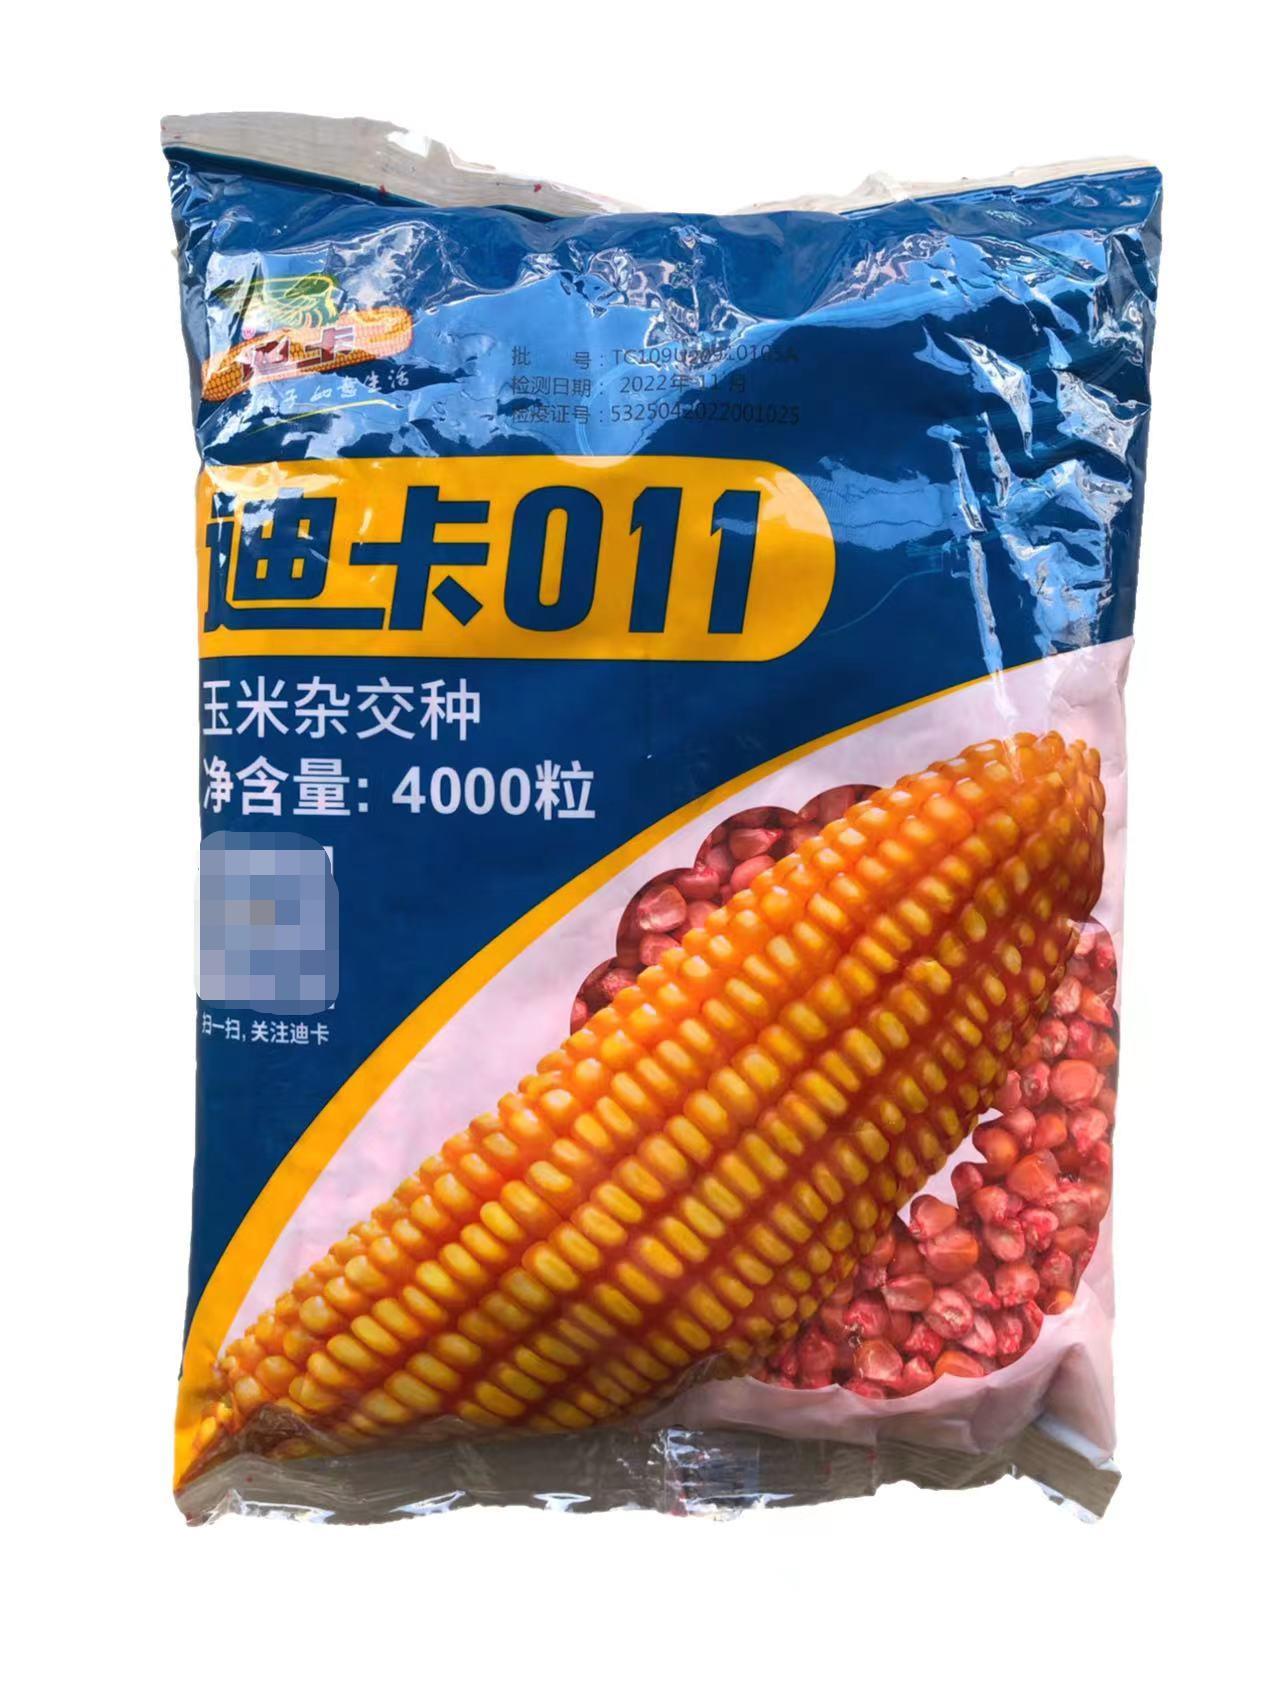 迪卡011玉米杂交种子4000粒硬土玉米鸡吃玉米大棒轴细粒长